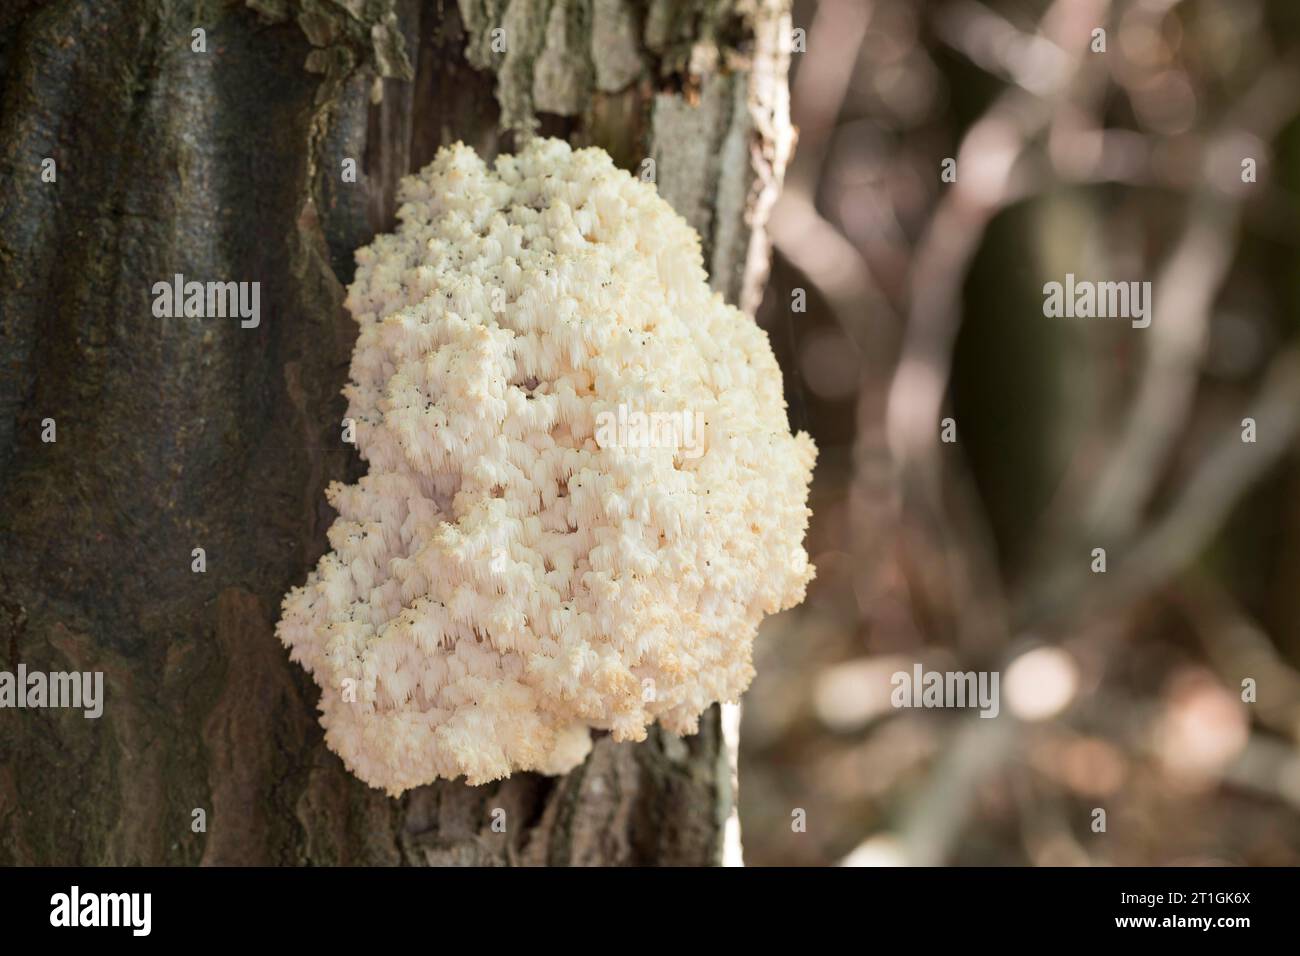 Fungo a pettine, dente di corallo (Hericium coralloides, Hericium clathroides), su legno morto, Germania Foto Stock